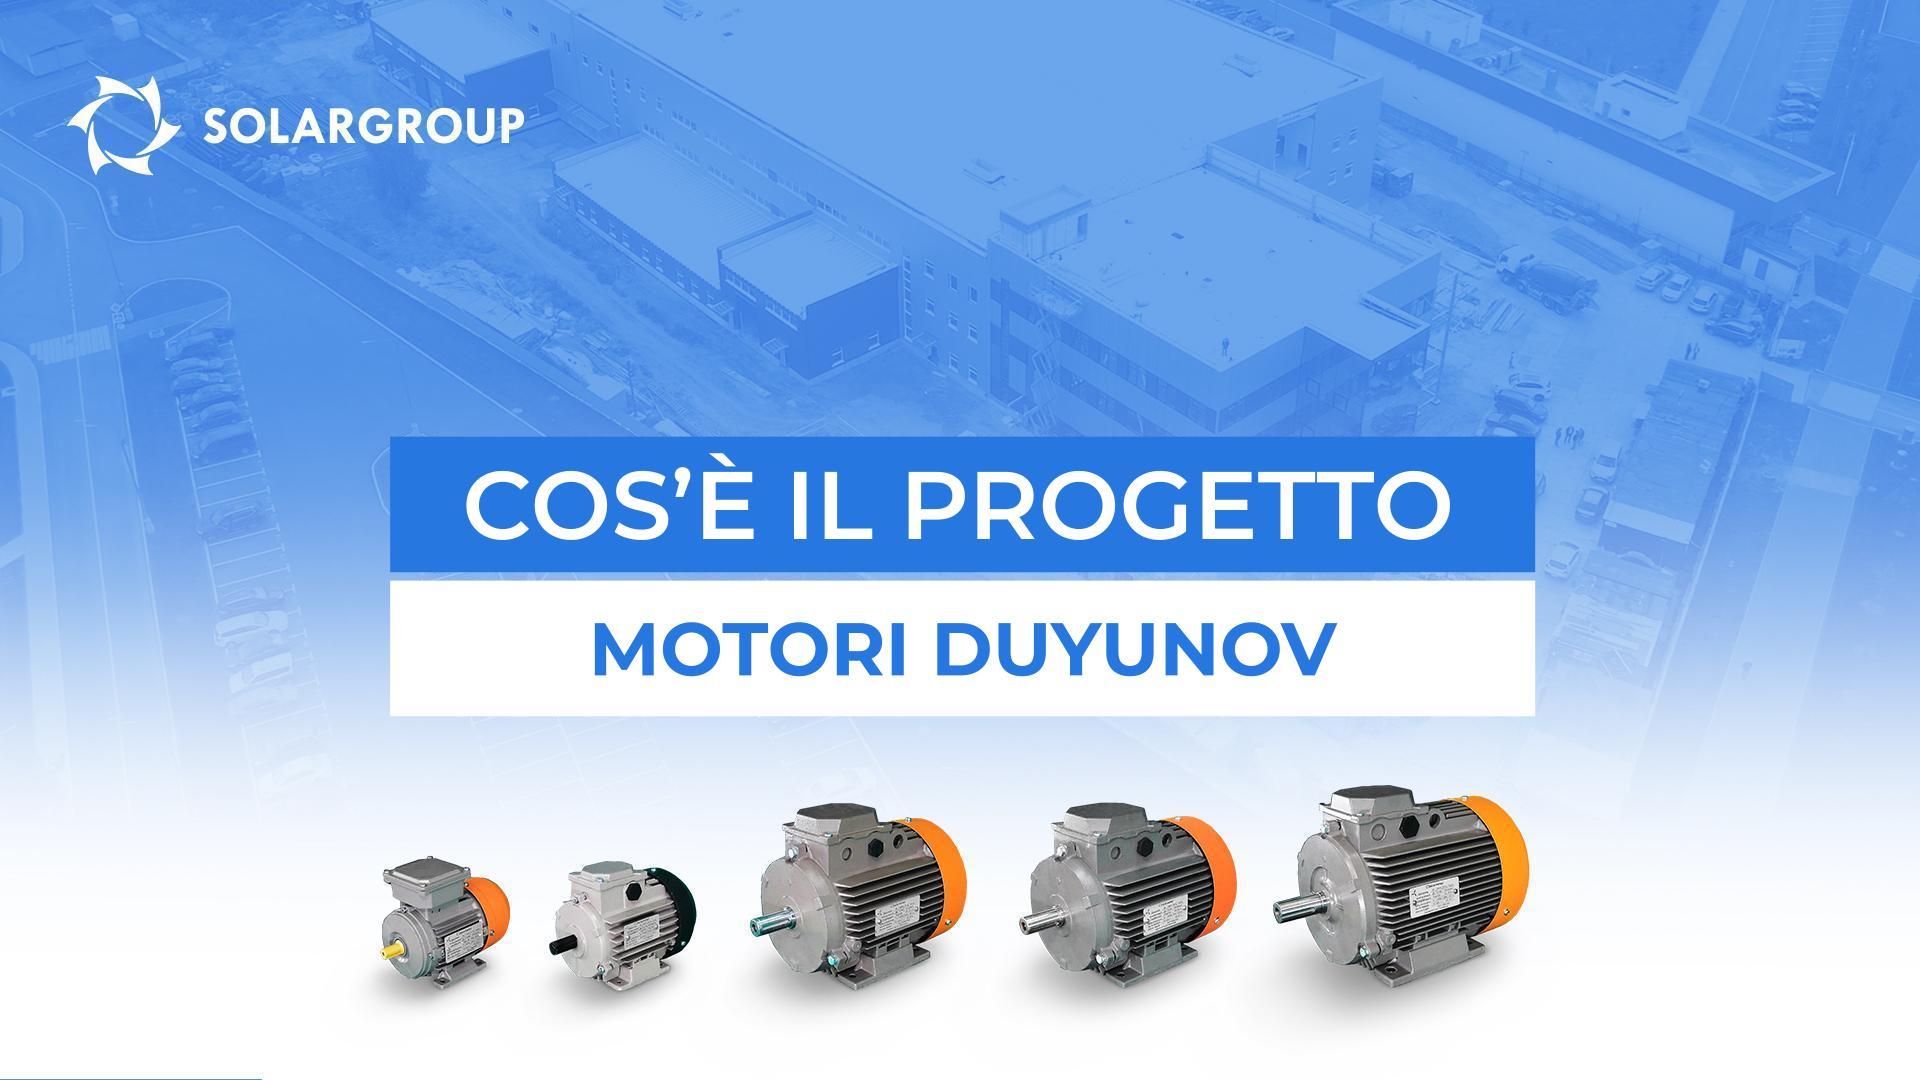 Presentazione video del progetto Motori Duyunov: scegli il tuo formato preferito!